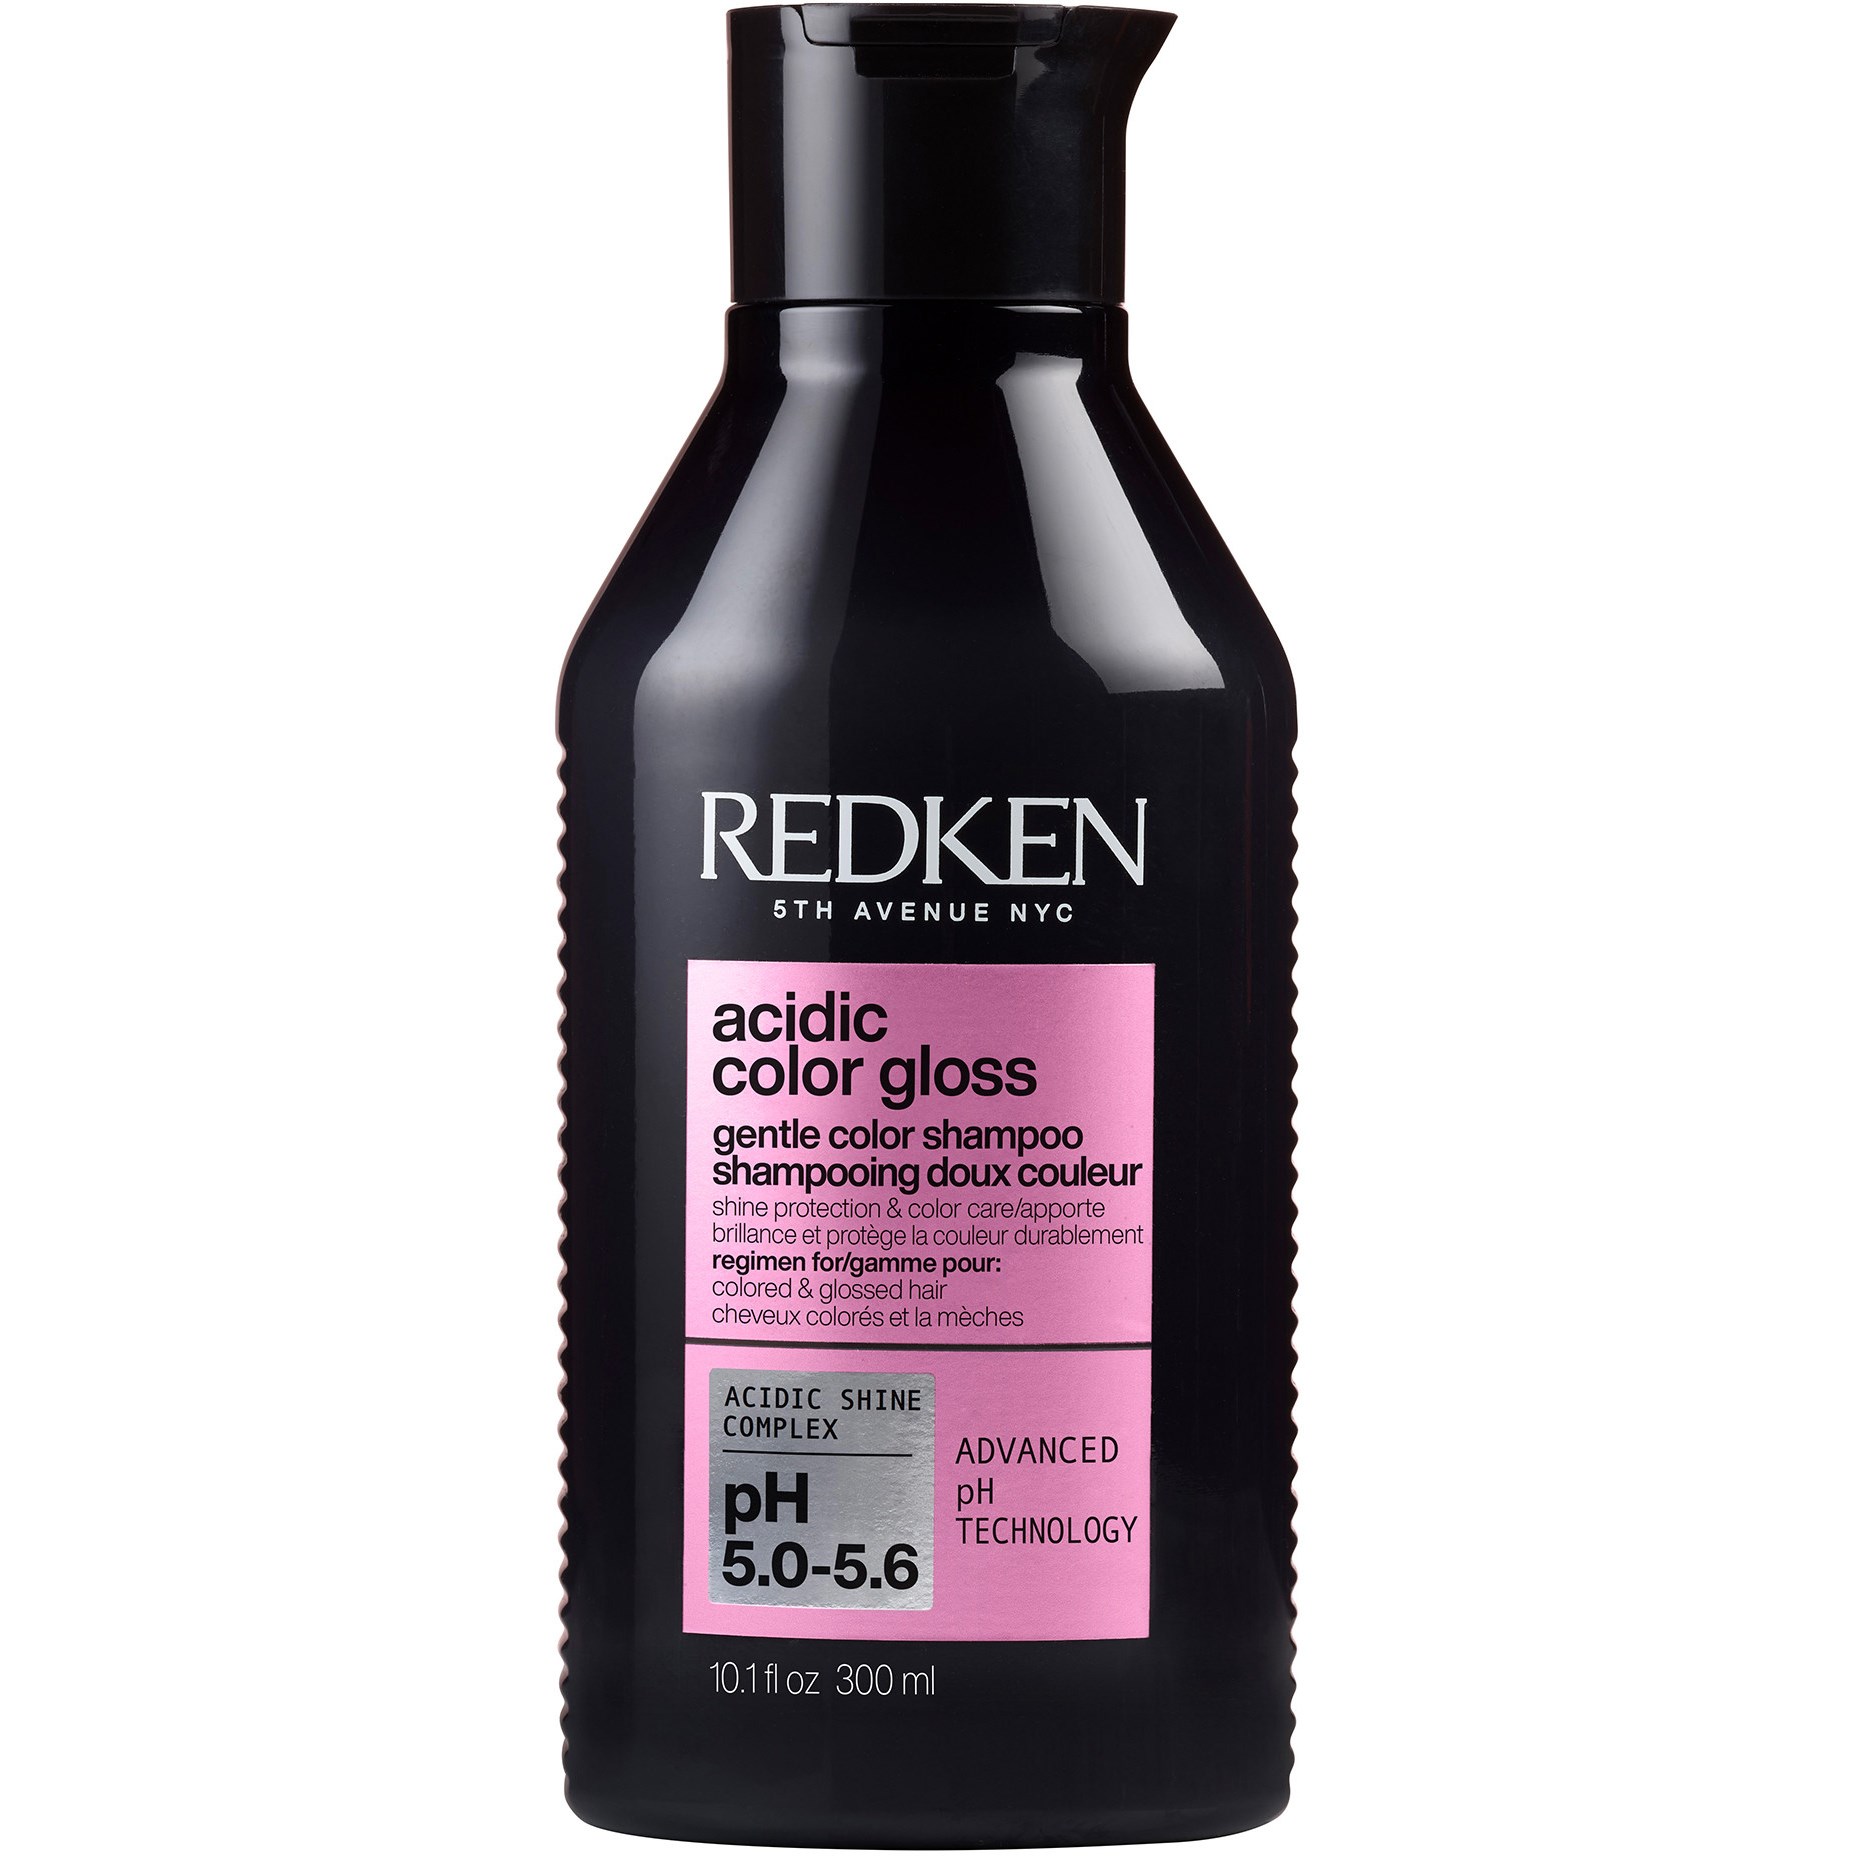 Bilde av Redken Acidic Color Gloss Shampoo 300 Ml 300 Ml